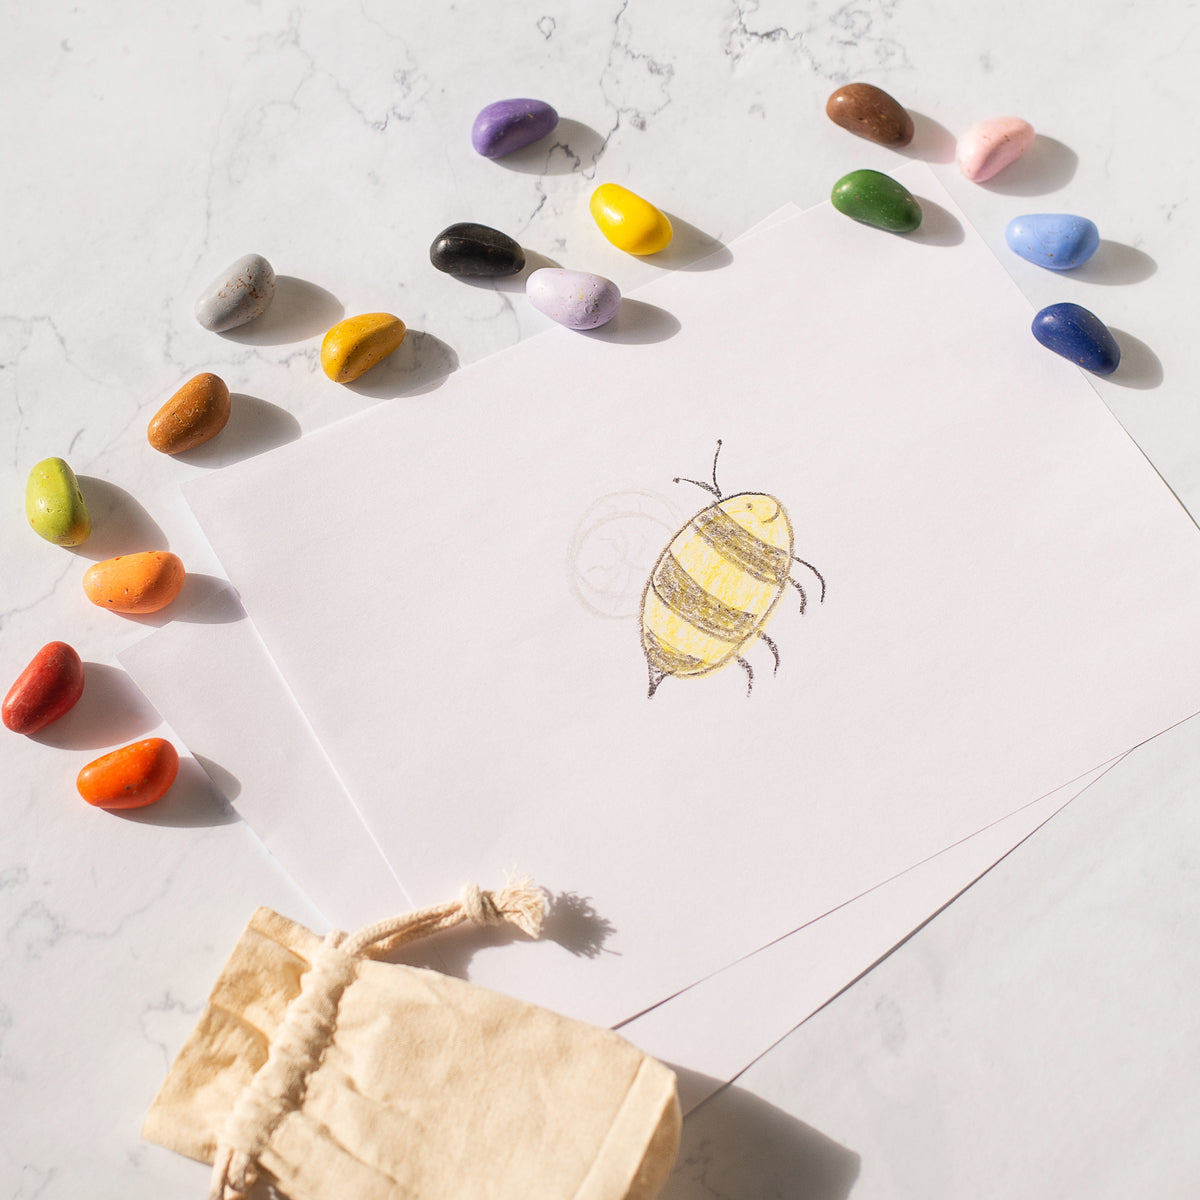 5-Piece Textured Organic Beeswax Ocean Rock Crayons – Smilogy